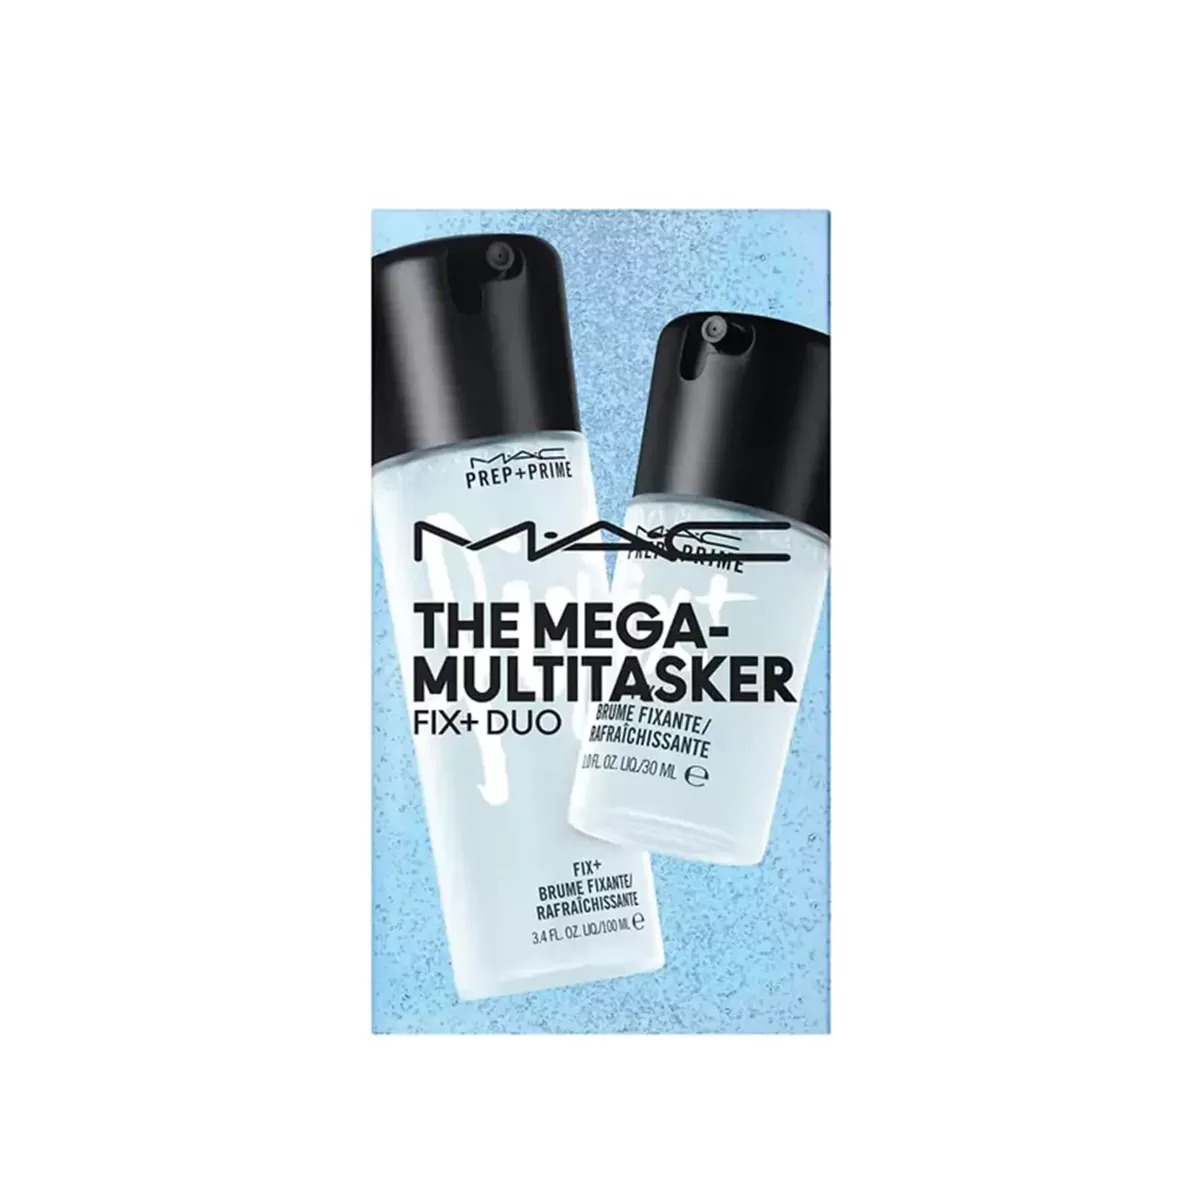 بعد از استفاده ست آرایشی مک MEGA-MULTITASKER FIX + DUO اورجینال + (تخفیف)